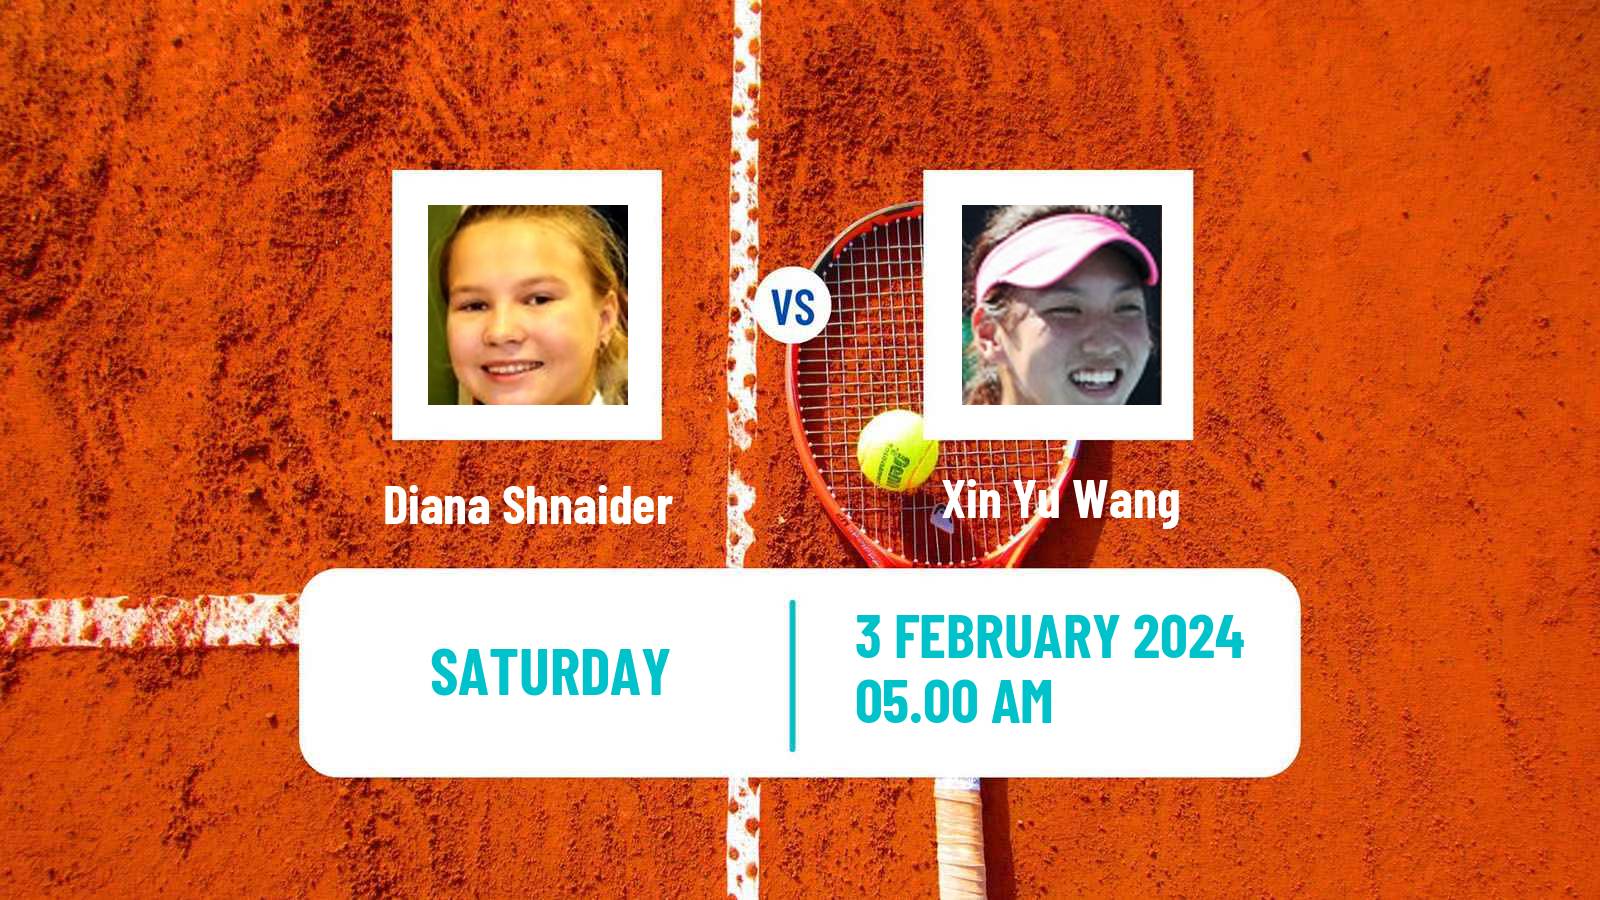 Tennis WTA Hua Hin Diana Shnaider - Xin Yu Wang